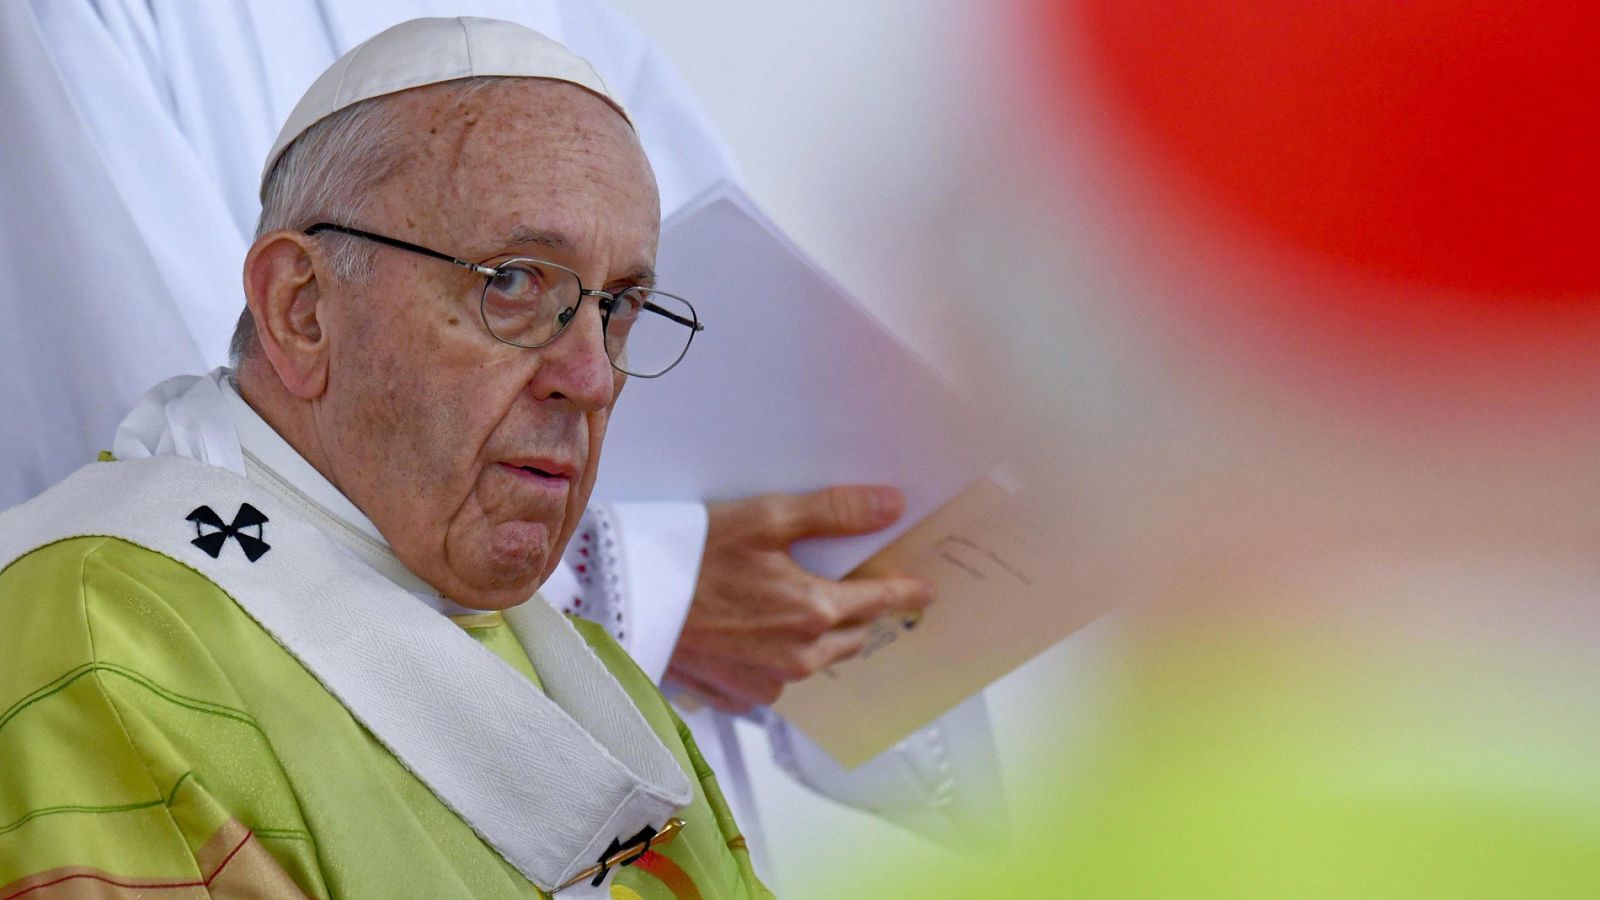 El papa Francisco pide perdón por los abusos en Irlanda